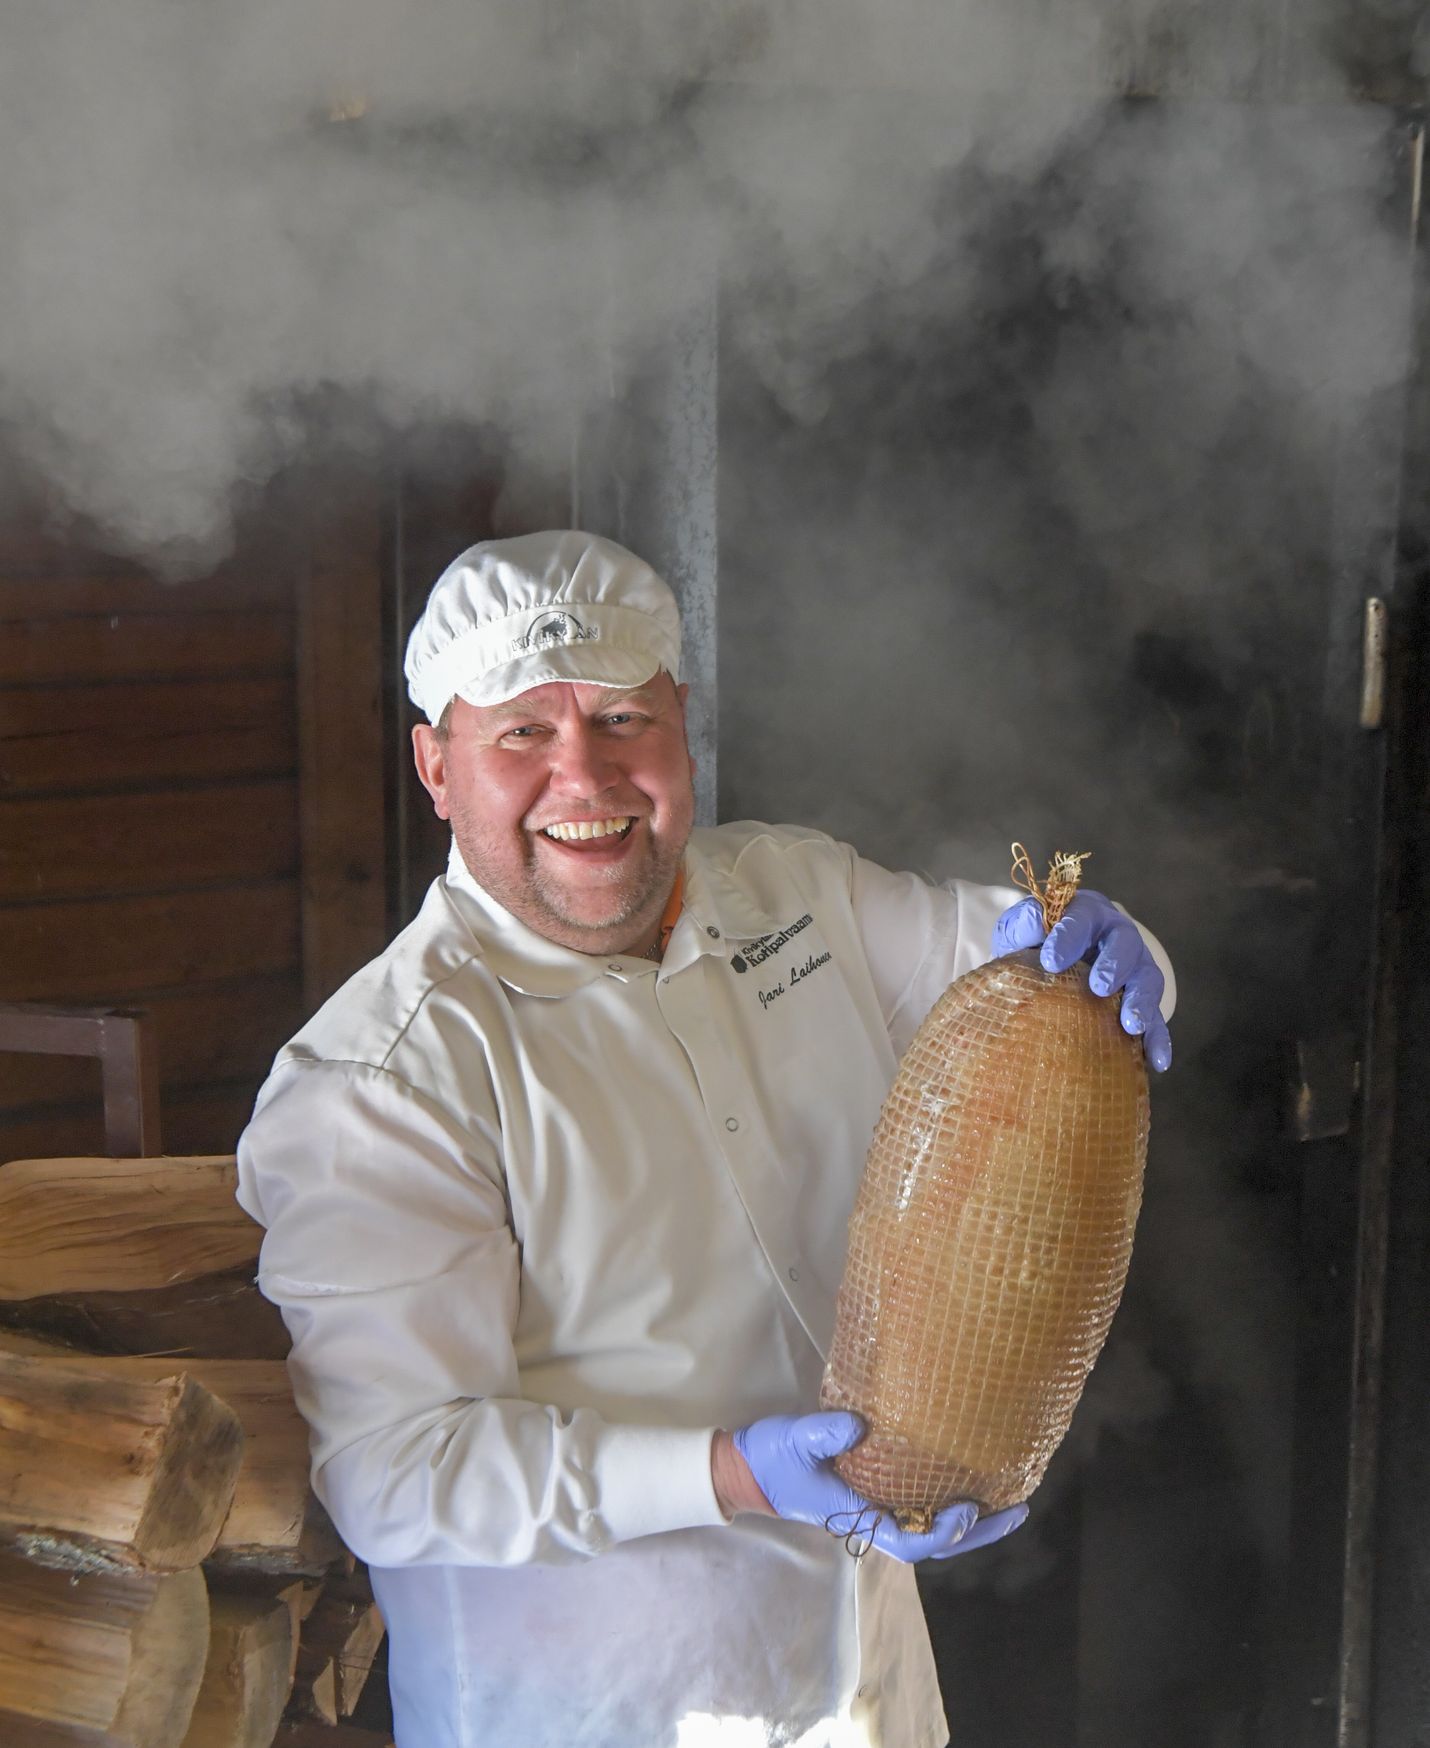 Saunapalvikinkun erityinen valmistustapa on voimakkaasti sidoksissa suomalaiseen saunakulttuuriin, mikä erottaa sen muista maista. Paikallista saunapalvikinkun tuotantoa edustaa Kivikylä.